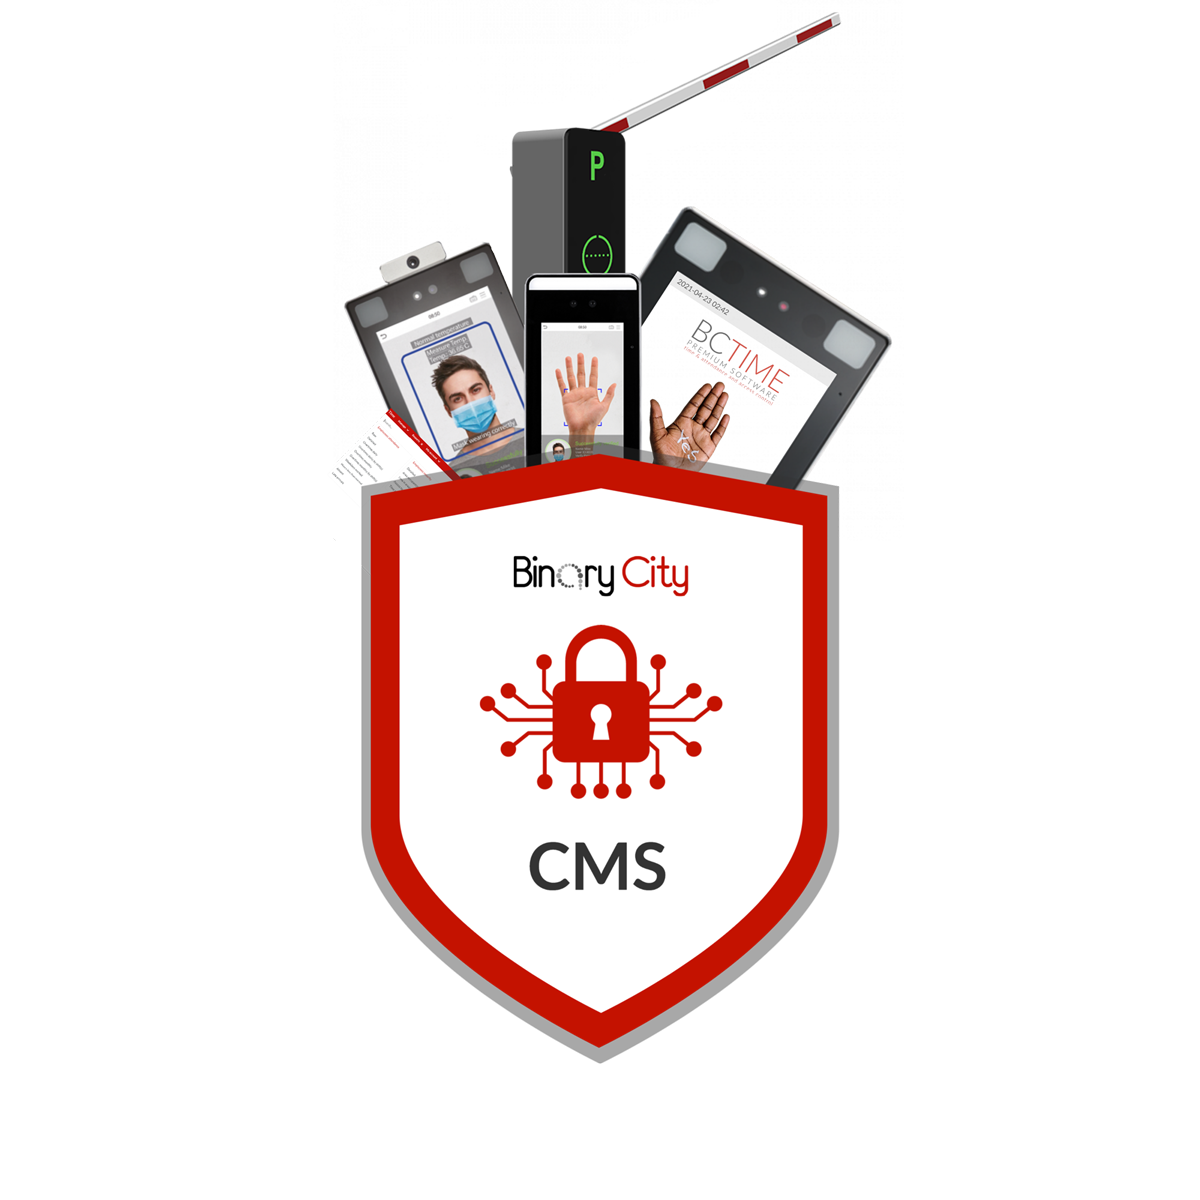 CMS emblem